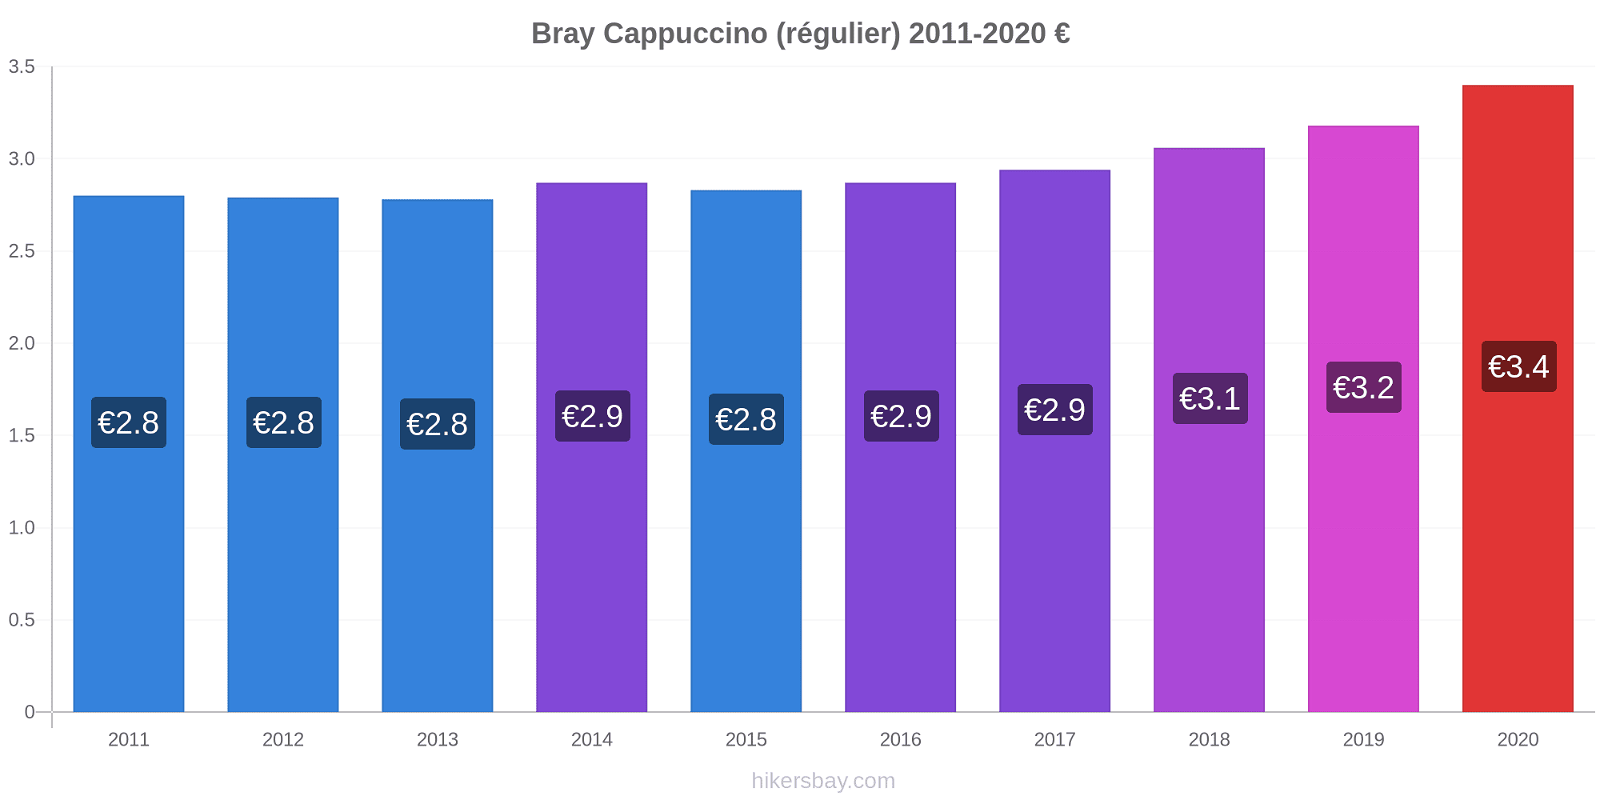 Bray changements de prix Cappuccino (régulier) hikersbay.com